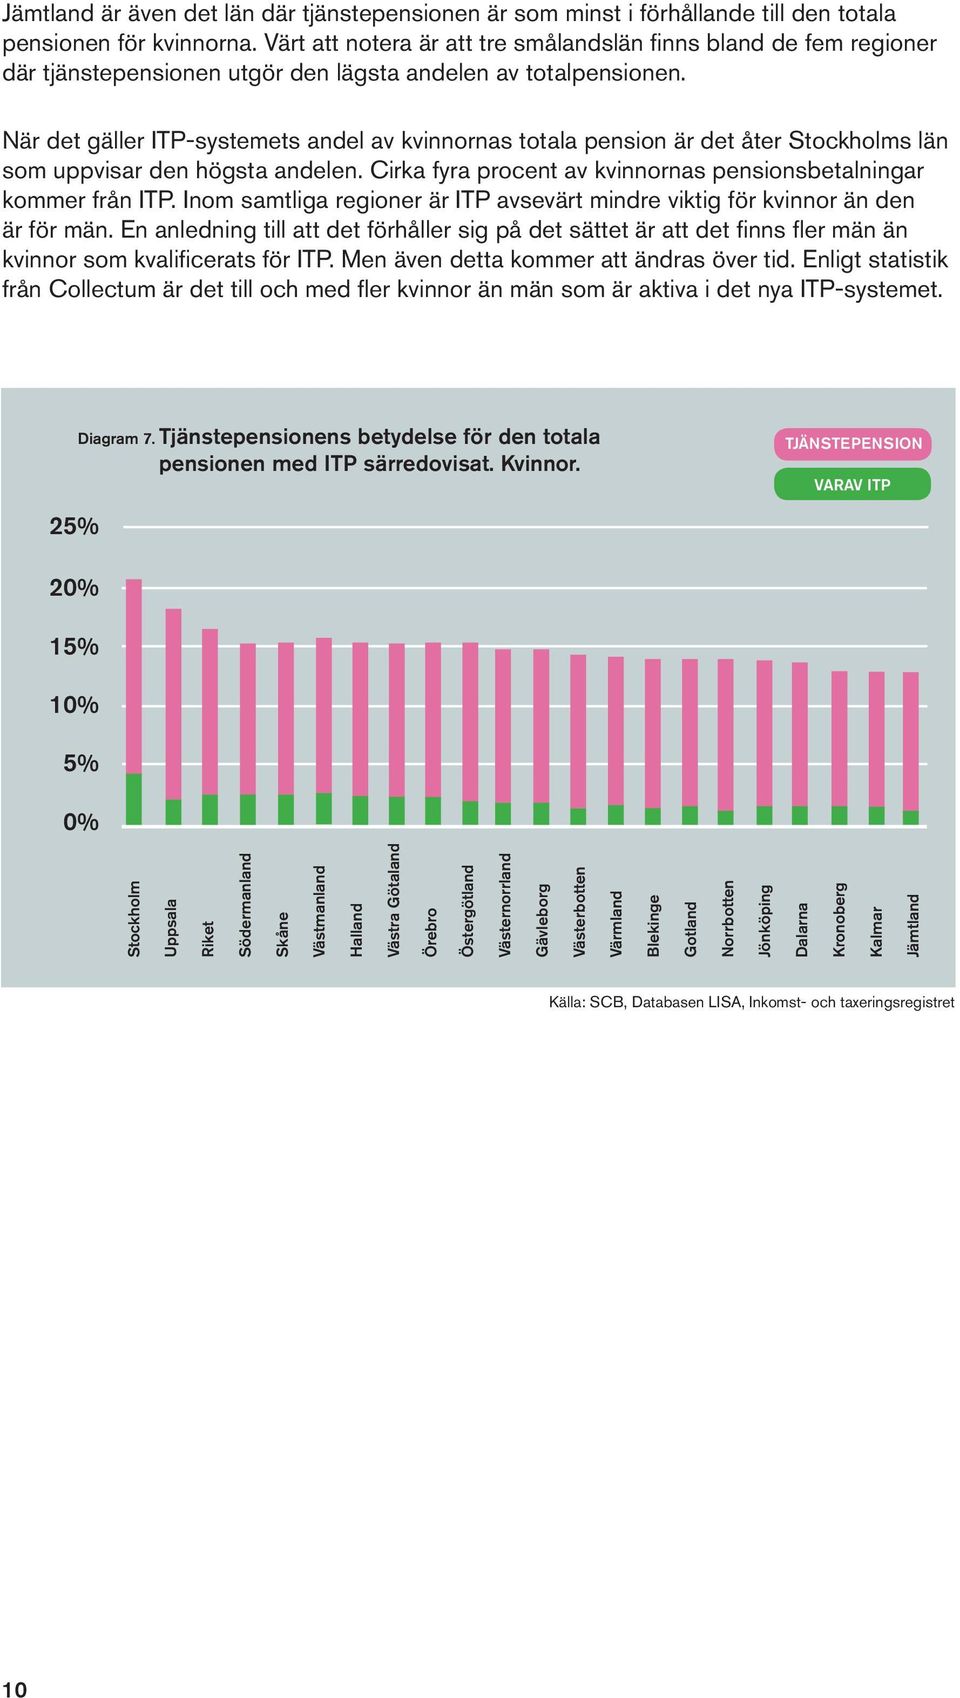 När det gäller ITP-systemets andel av kvinnornas totala pension är det åter Stockholms län som uppvisar den högsta andelen. Cirka fyra procent av kvinnornas pensionsbetalningar kommer från ITP.